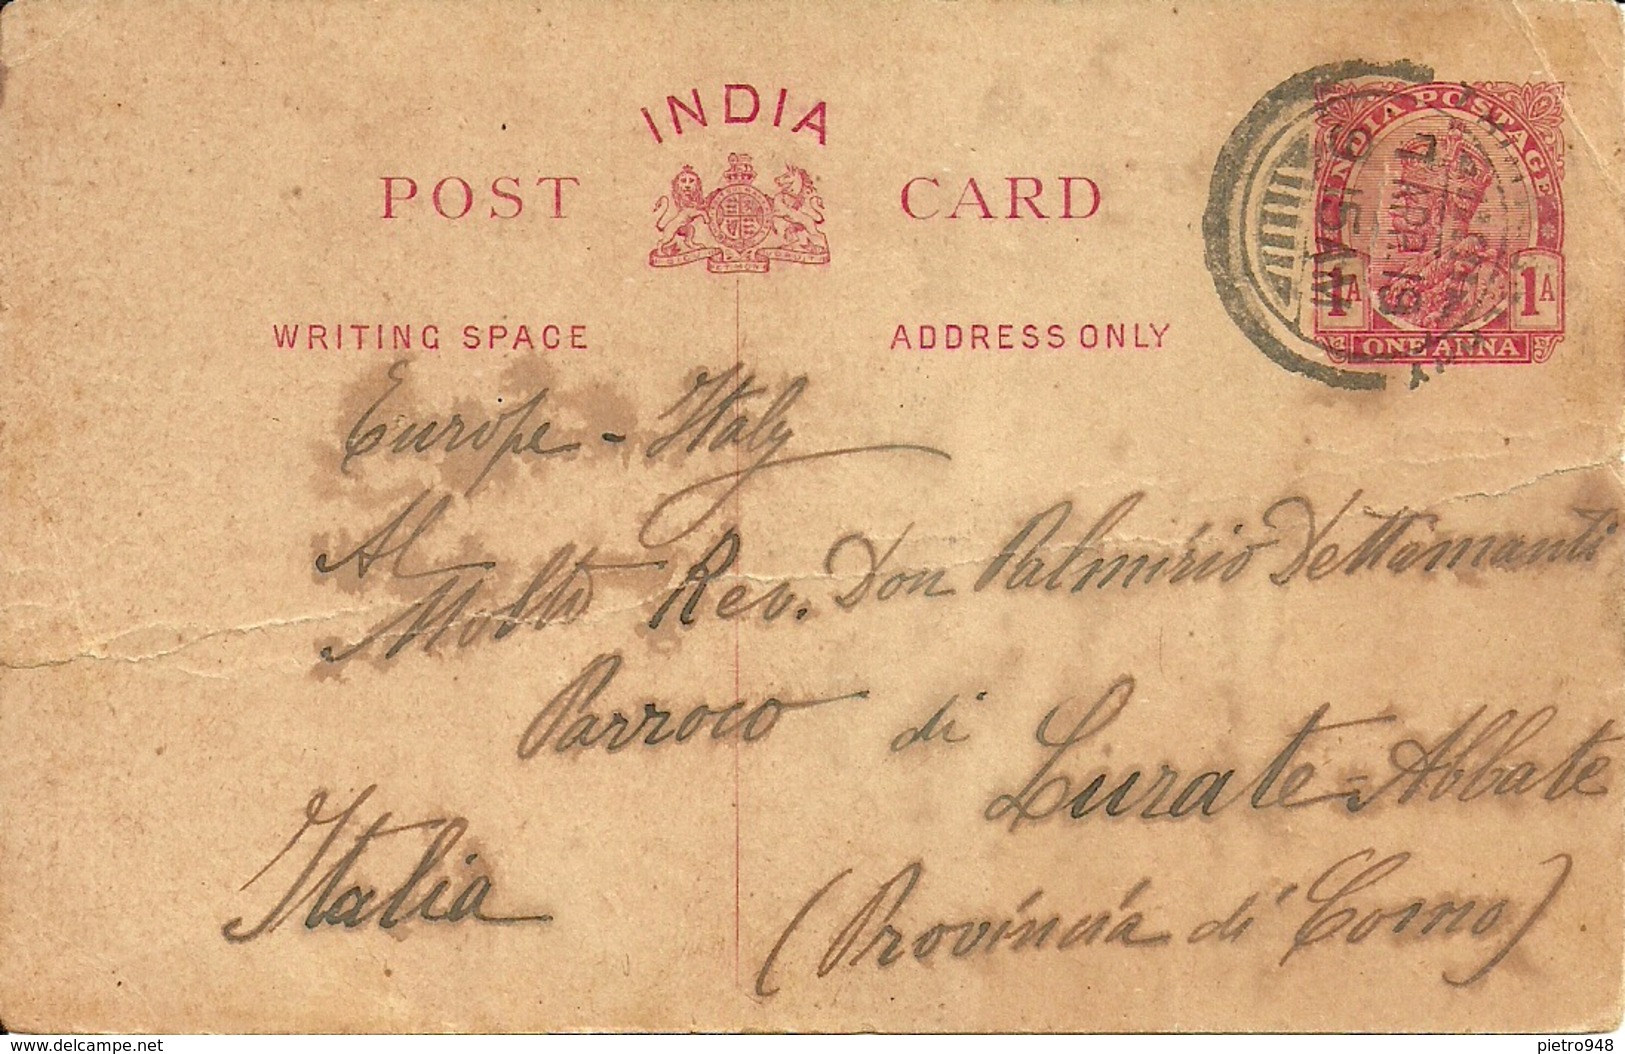 Post Card (India) Carte Postale, Cartolina Postale - India